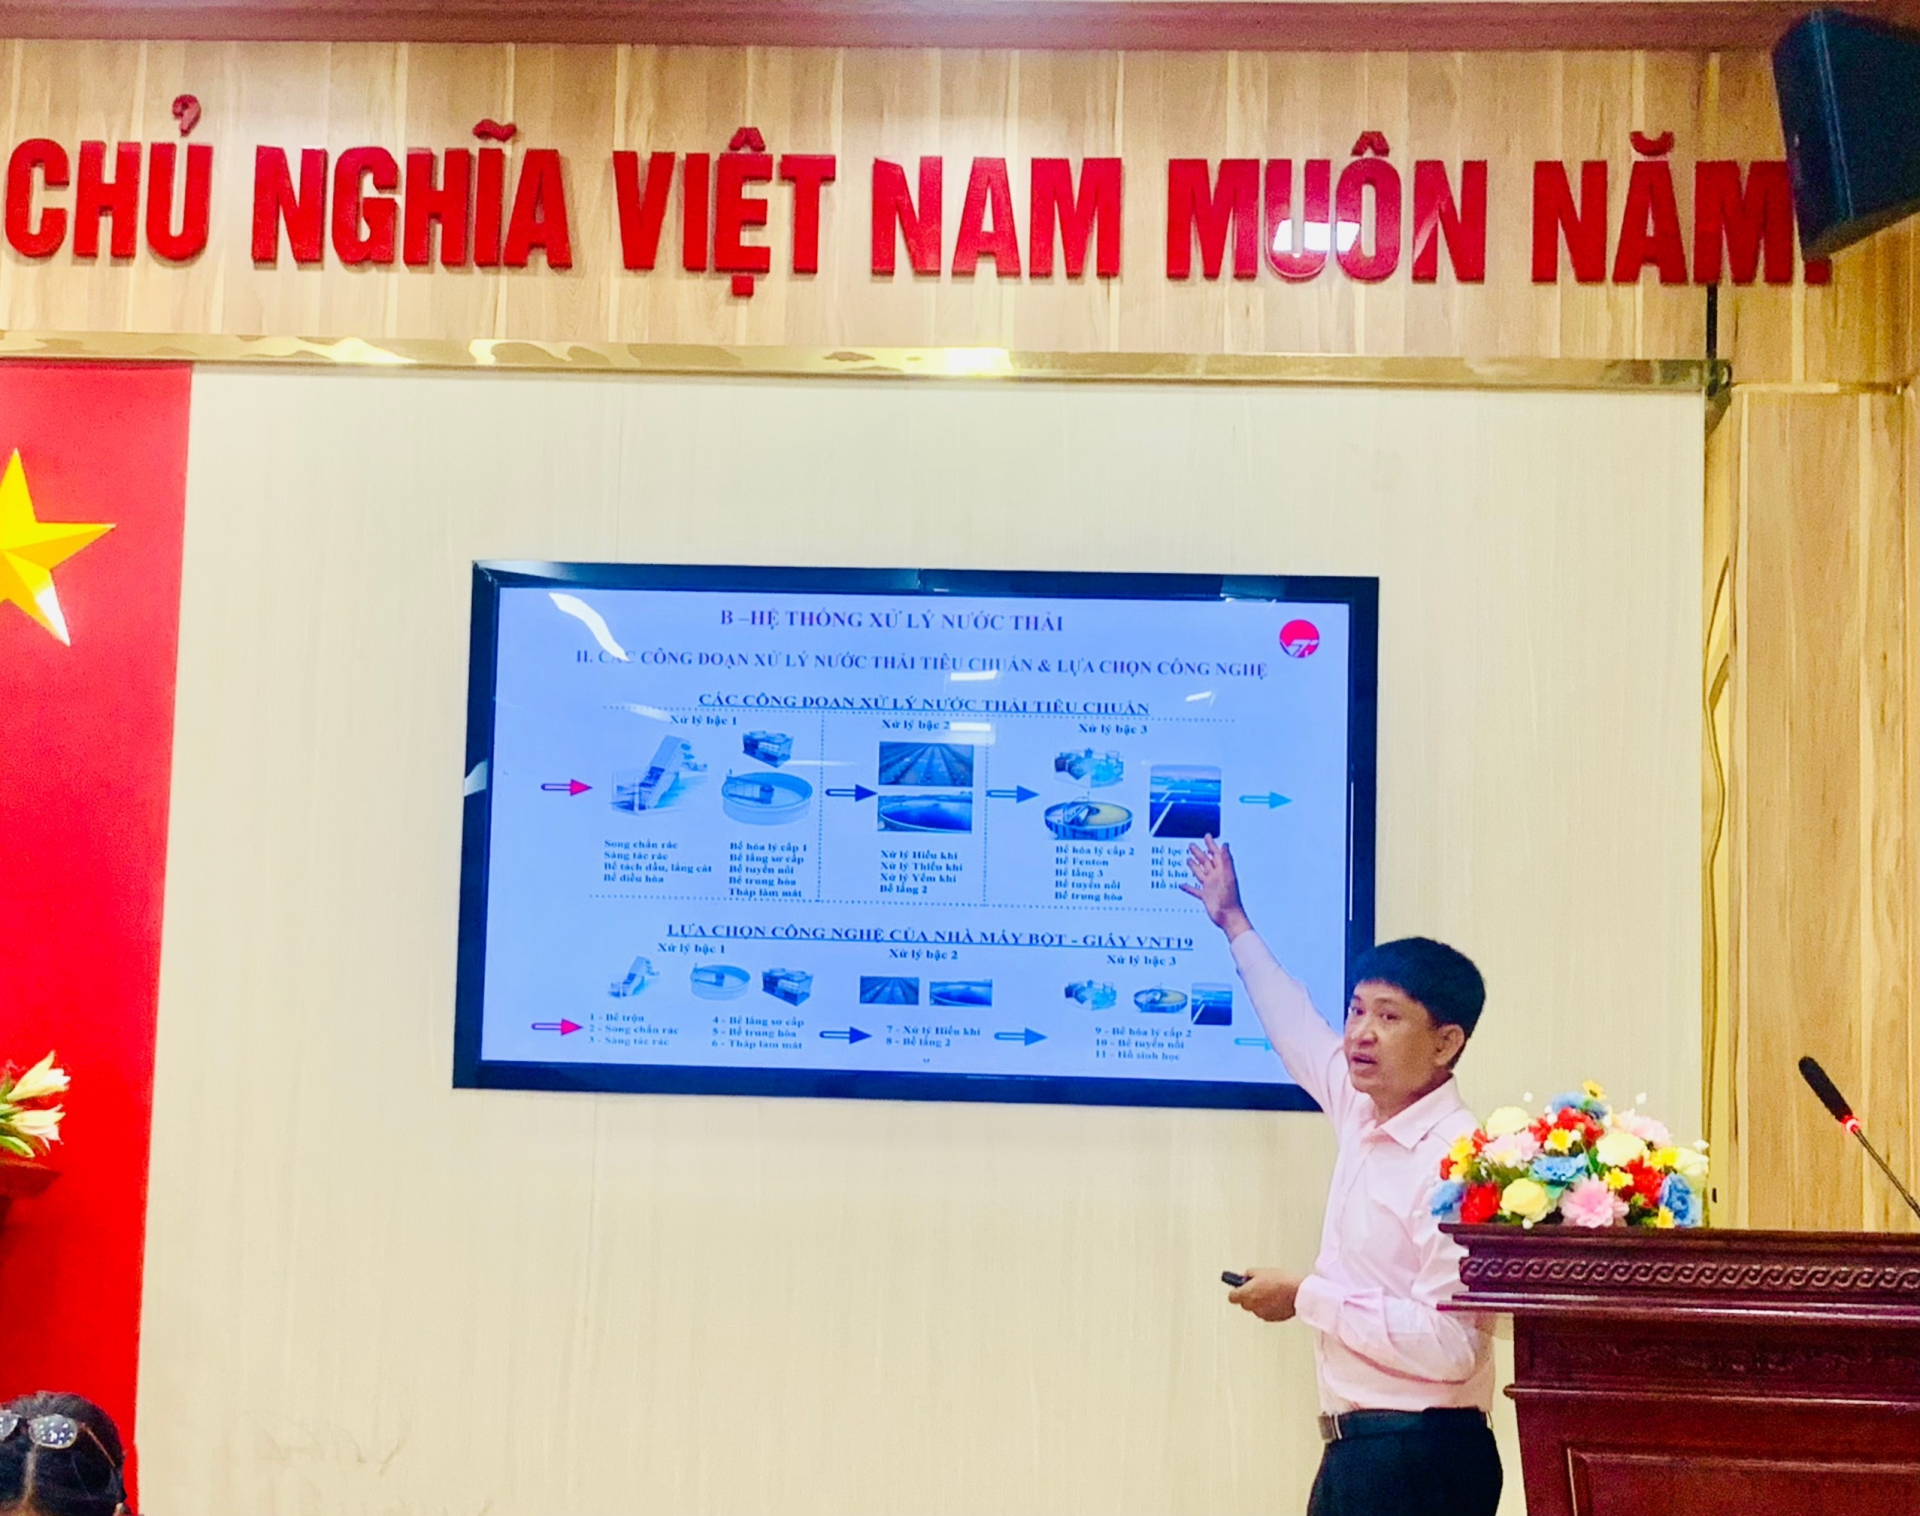 Ông Nguyễn Đức Hữu, Phó Tổng Giám đốc Công ty Cổ phần Bột - Giấy VNT19 cung cấp thông tin về hệ thống xử lý nước thải của Nhà máy.